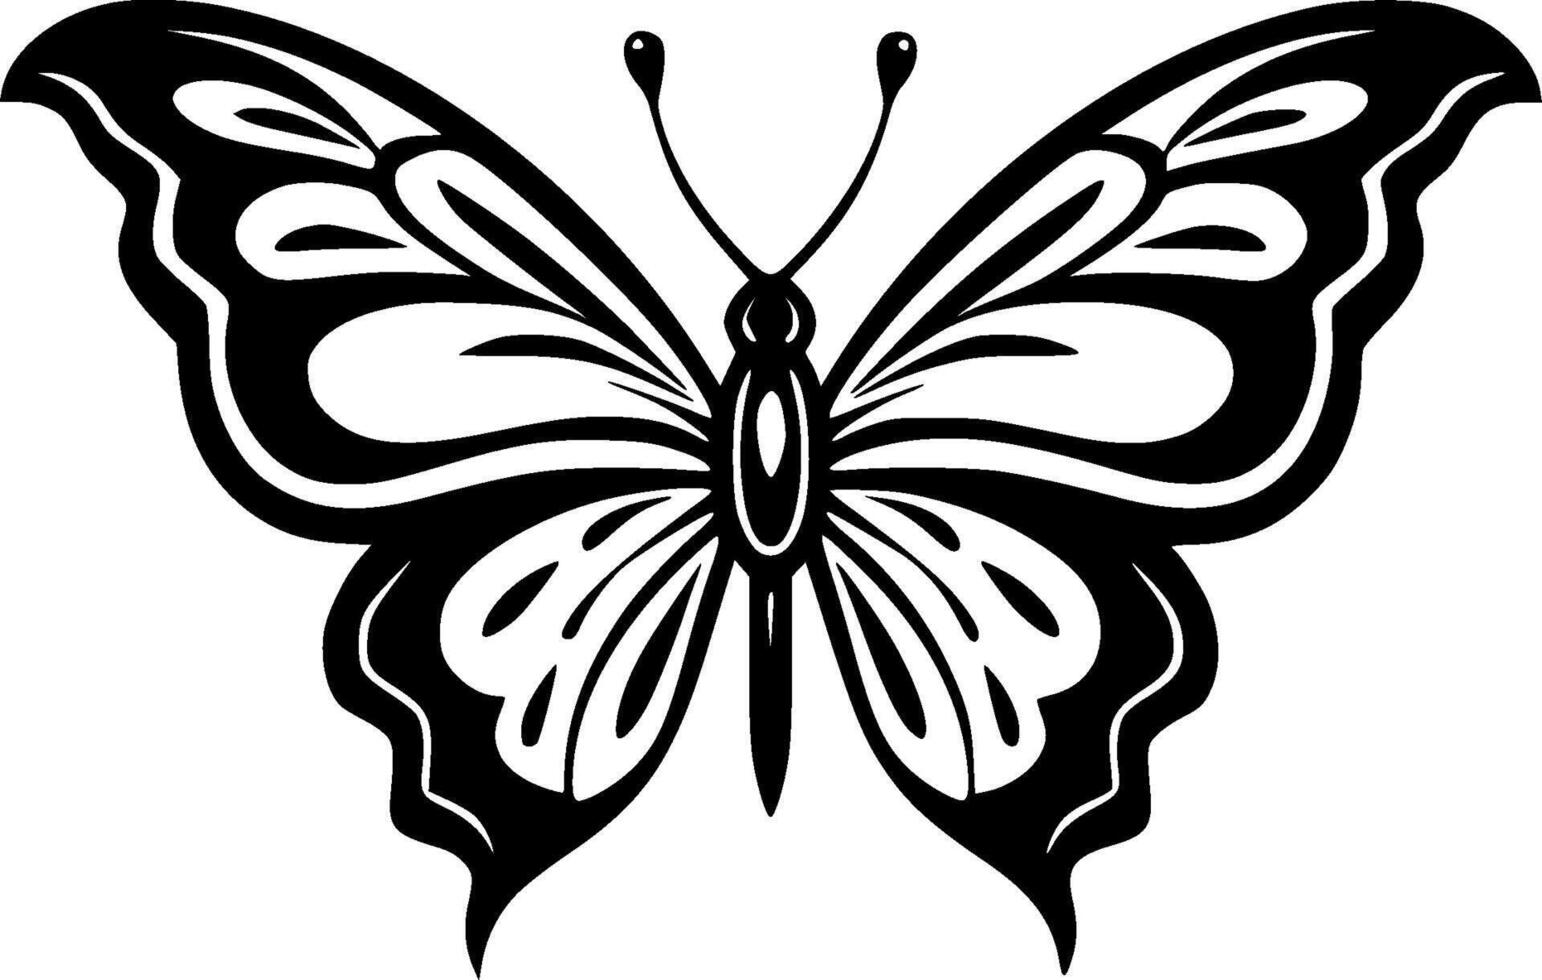 Schmetterling, minimalistisch und einfach Silhouette - - Vektor Illustration